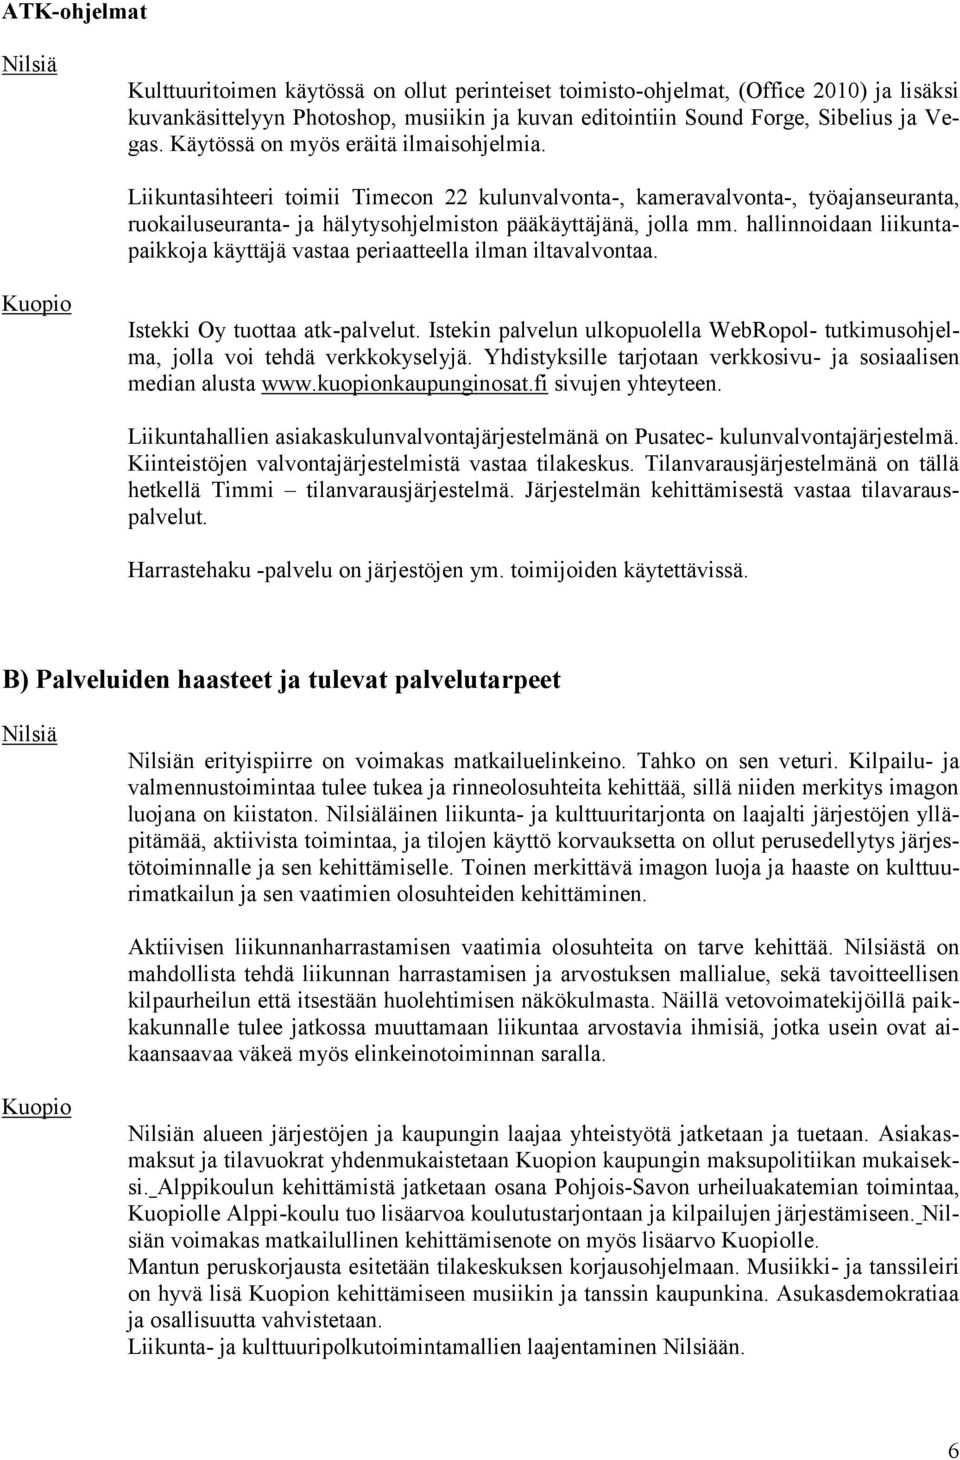 hallinnoidaan liikuntapaikkoja käyttäjä vastaa periaatteella ilman iltavalvontaa. Kuopio Istekki Oy tuottaa atk-palvelut.